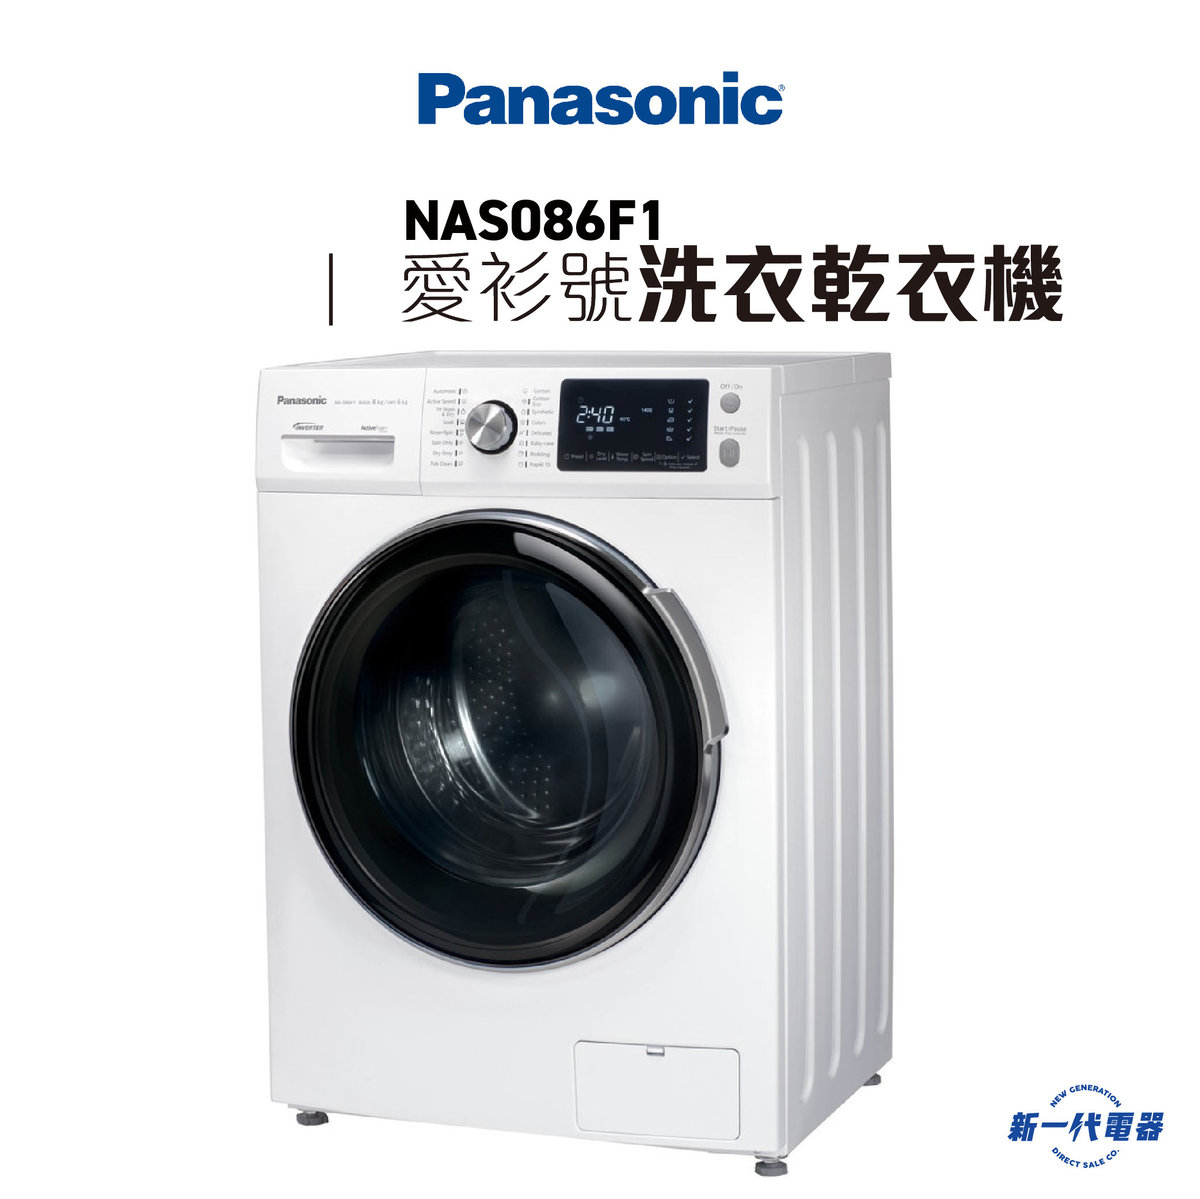 NAS086F1 -8KG 1400轉「愛衫號」2合1 乾衣洗衣機 前置式 6KG乾衣量 (NA-S086F1)